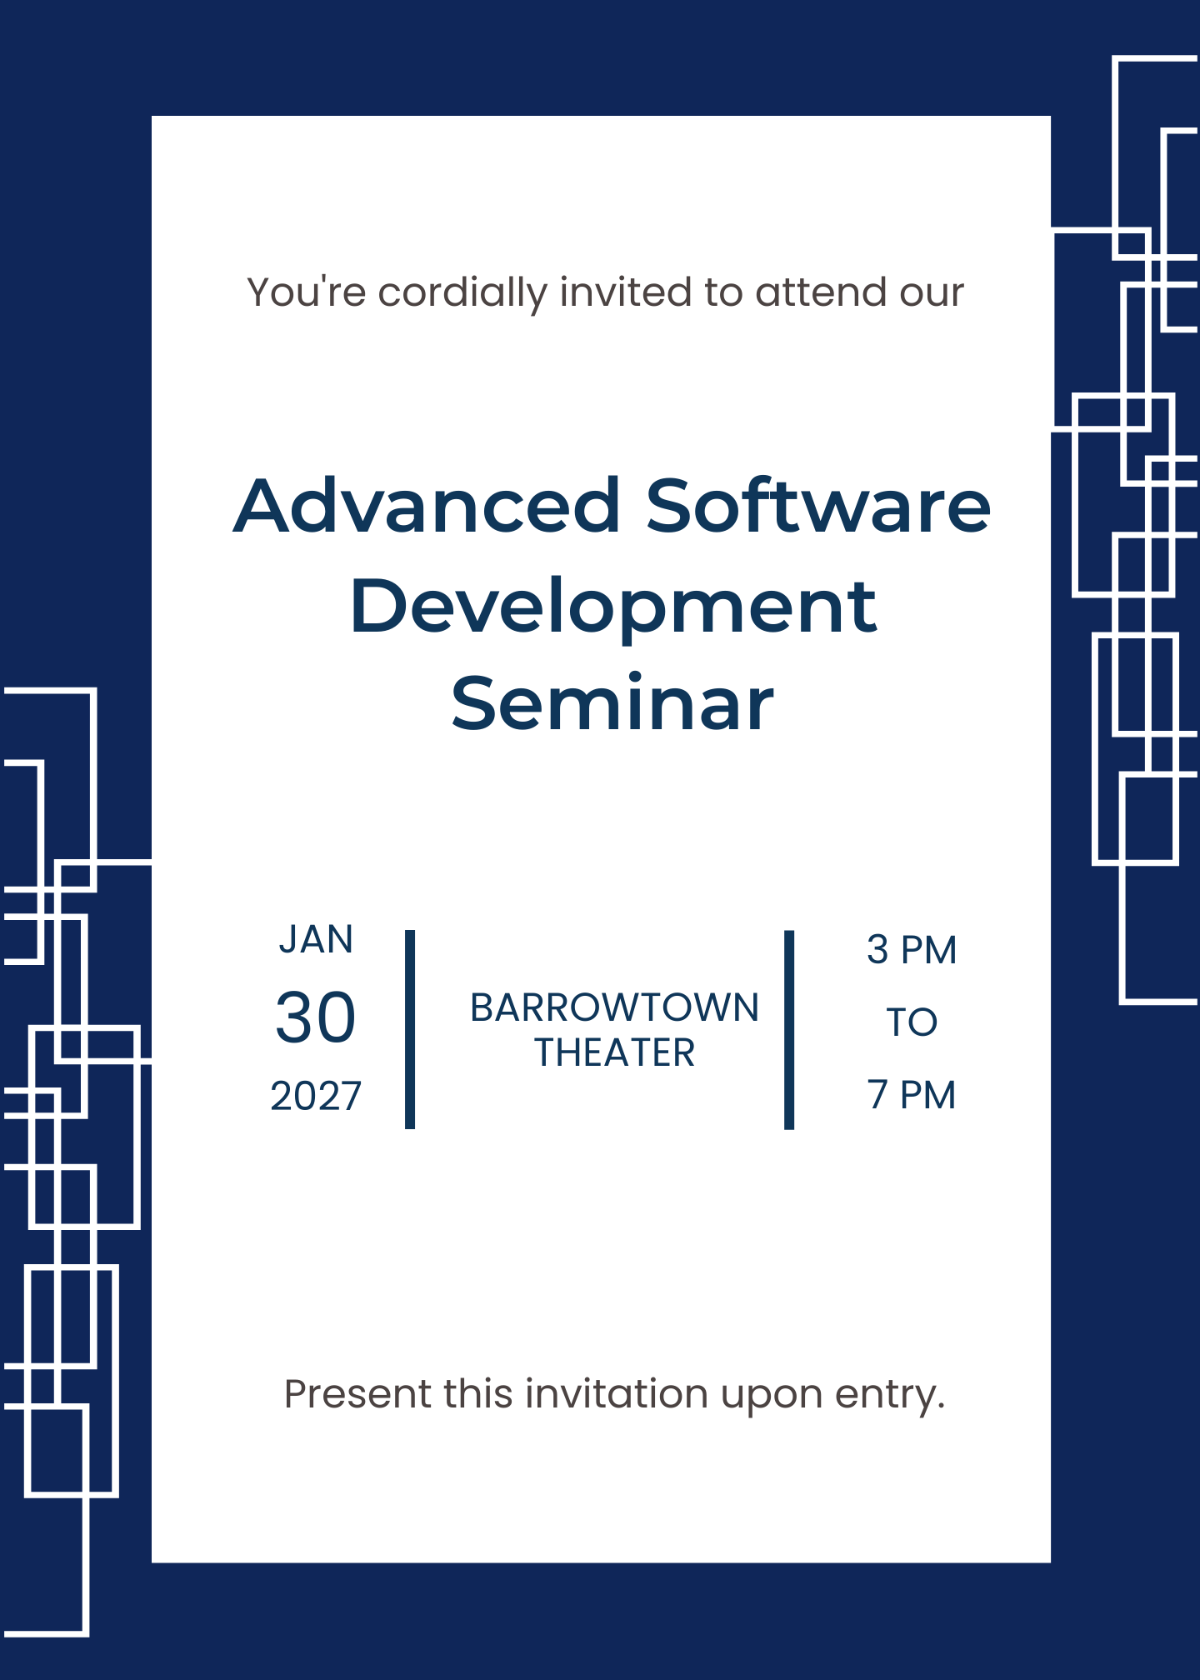 Software Seminar Invitation Template